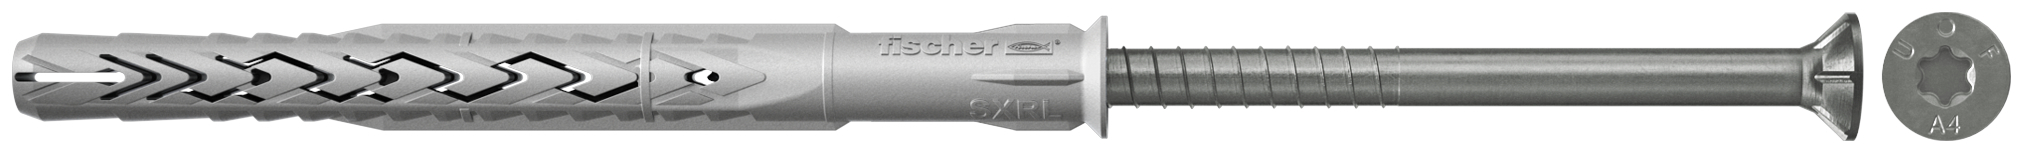 fischer Tasselli prolungati SXRL 8x140 T A4 (1 Pz.) Tassello prolungato in nylon con marcatura CE con vite premontata in acciaio inox A4, T.S.P. impronta torx.